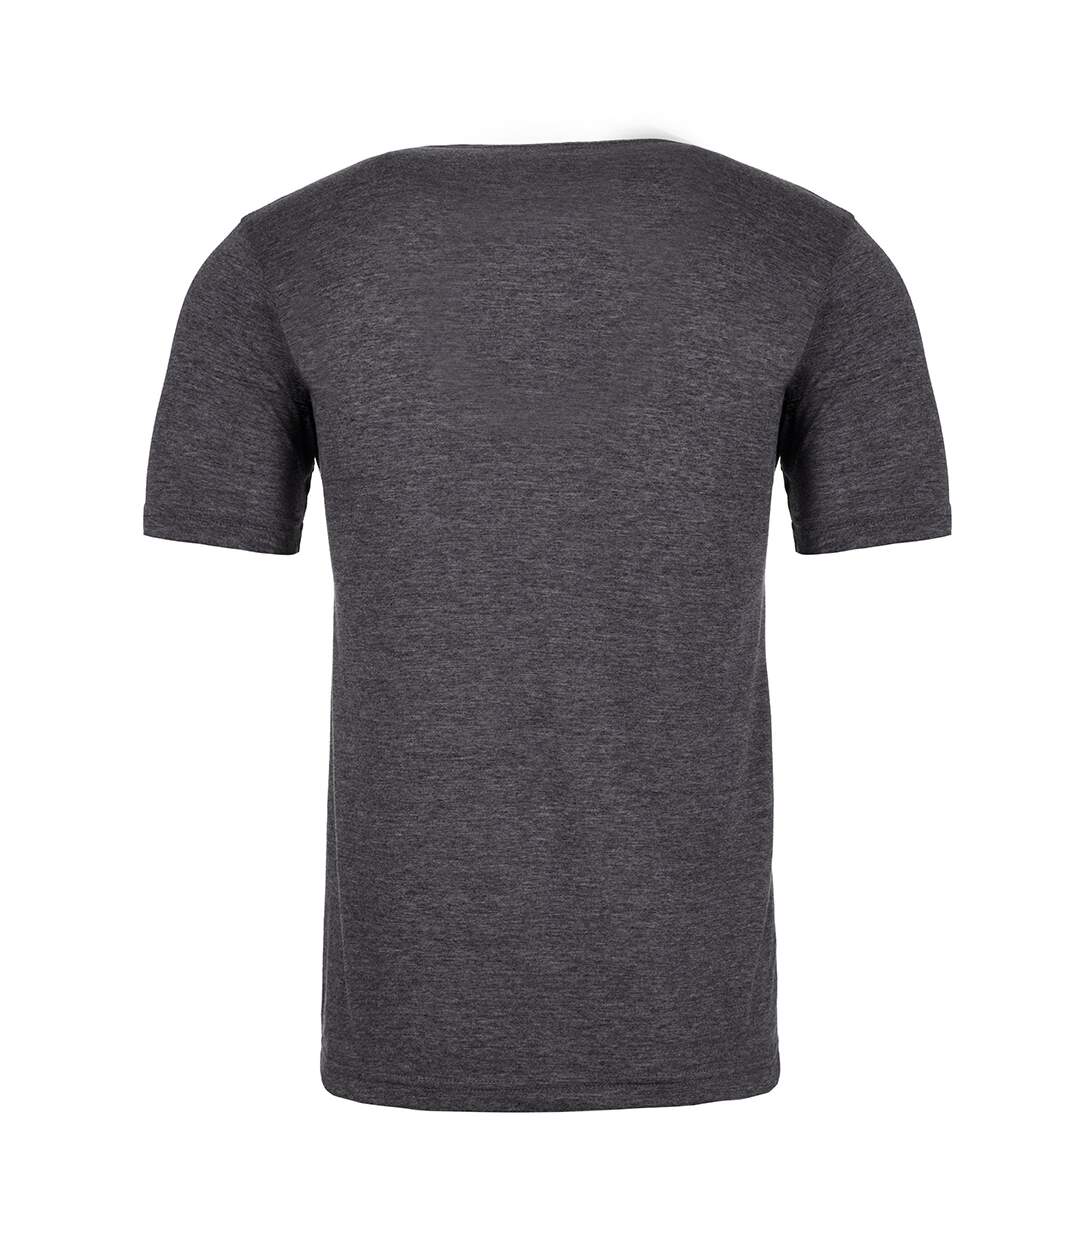 Next Level - T-shirt - Homme (Gris foncé) - UTPC4182